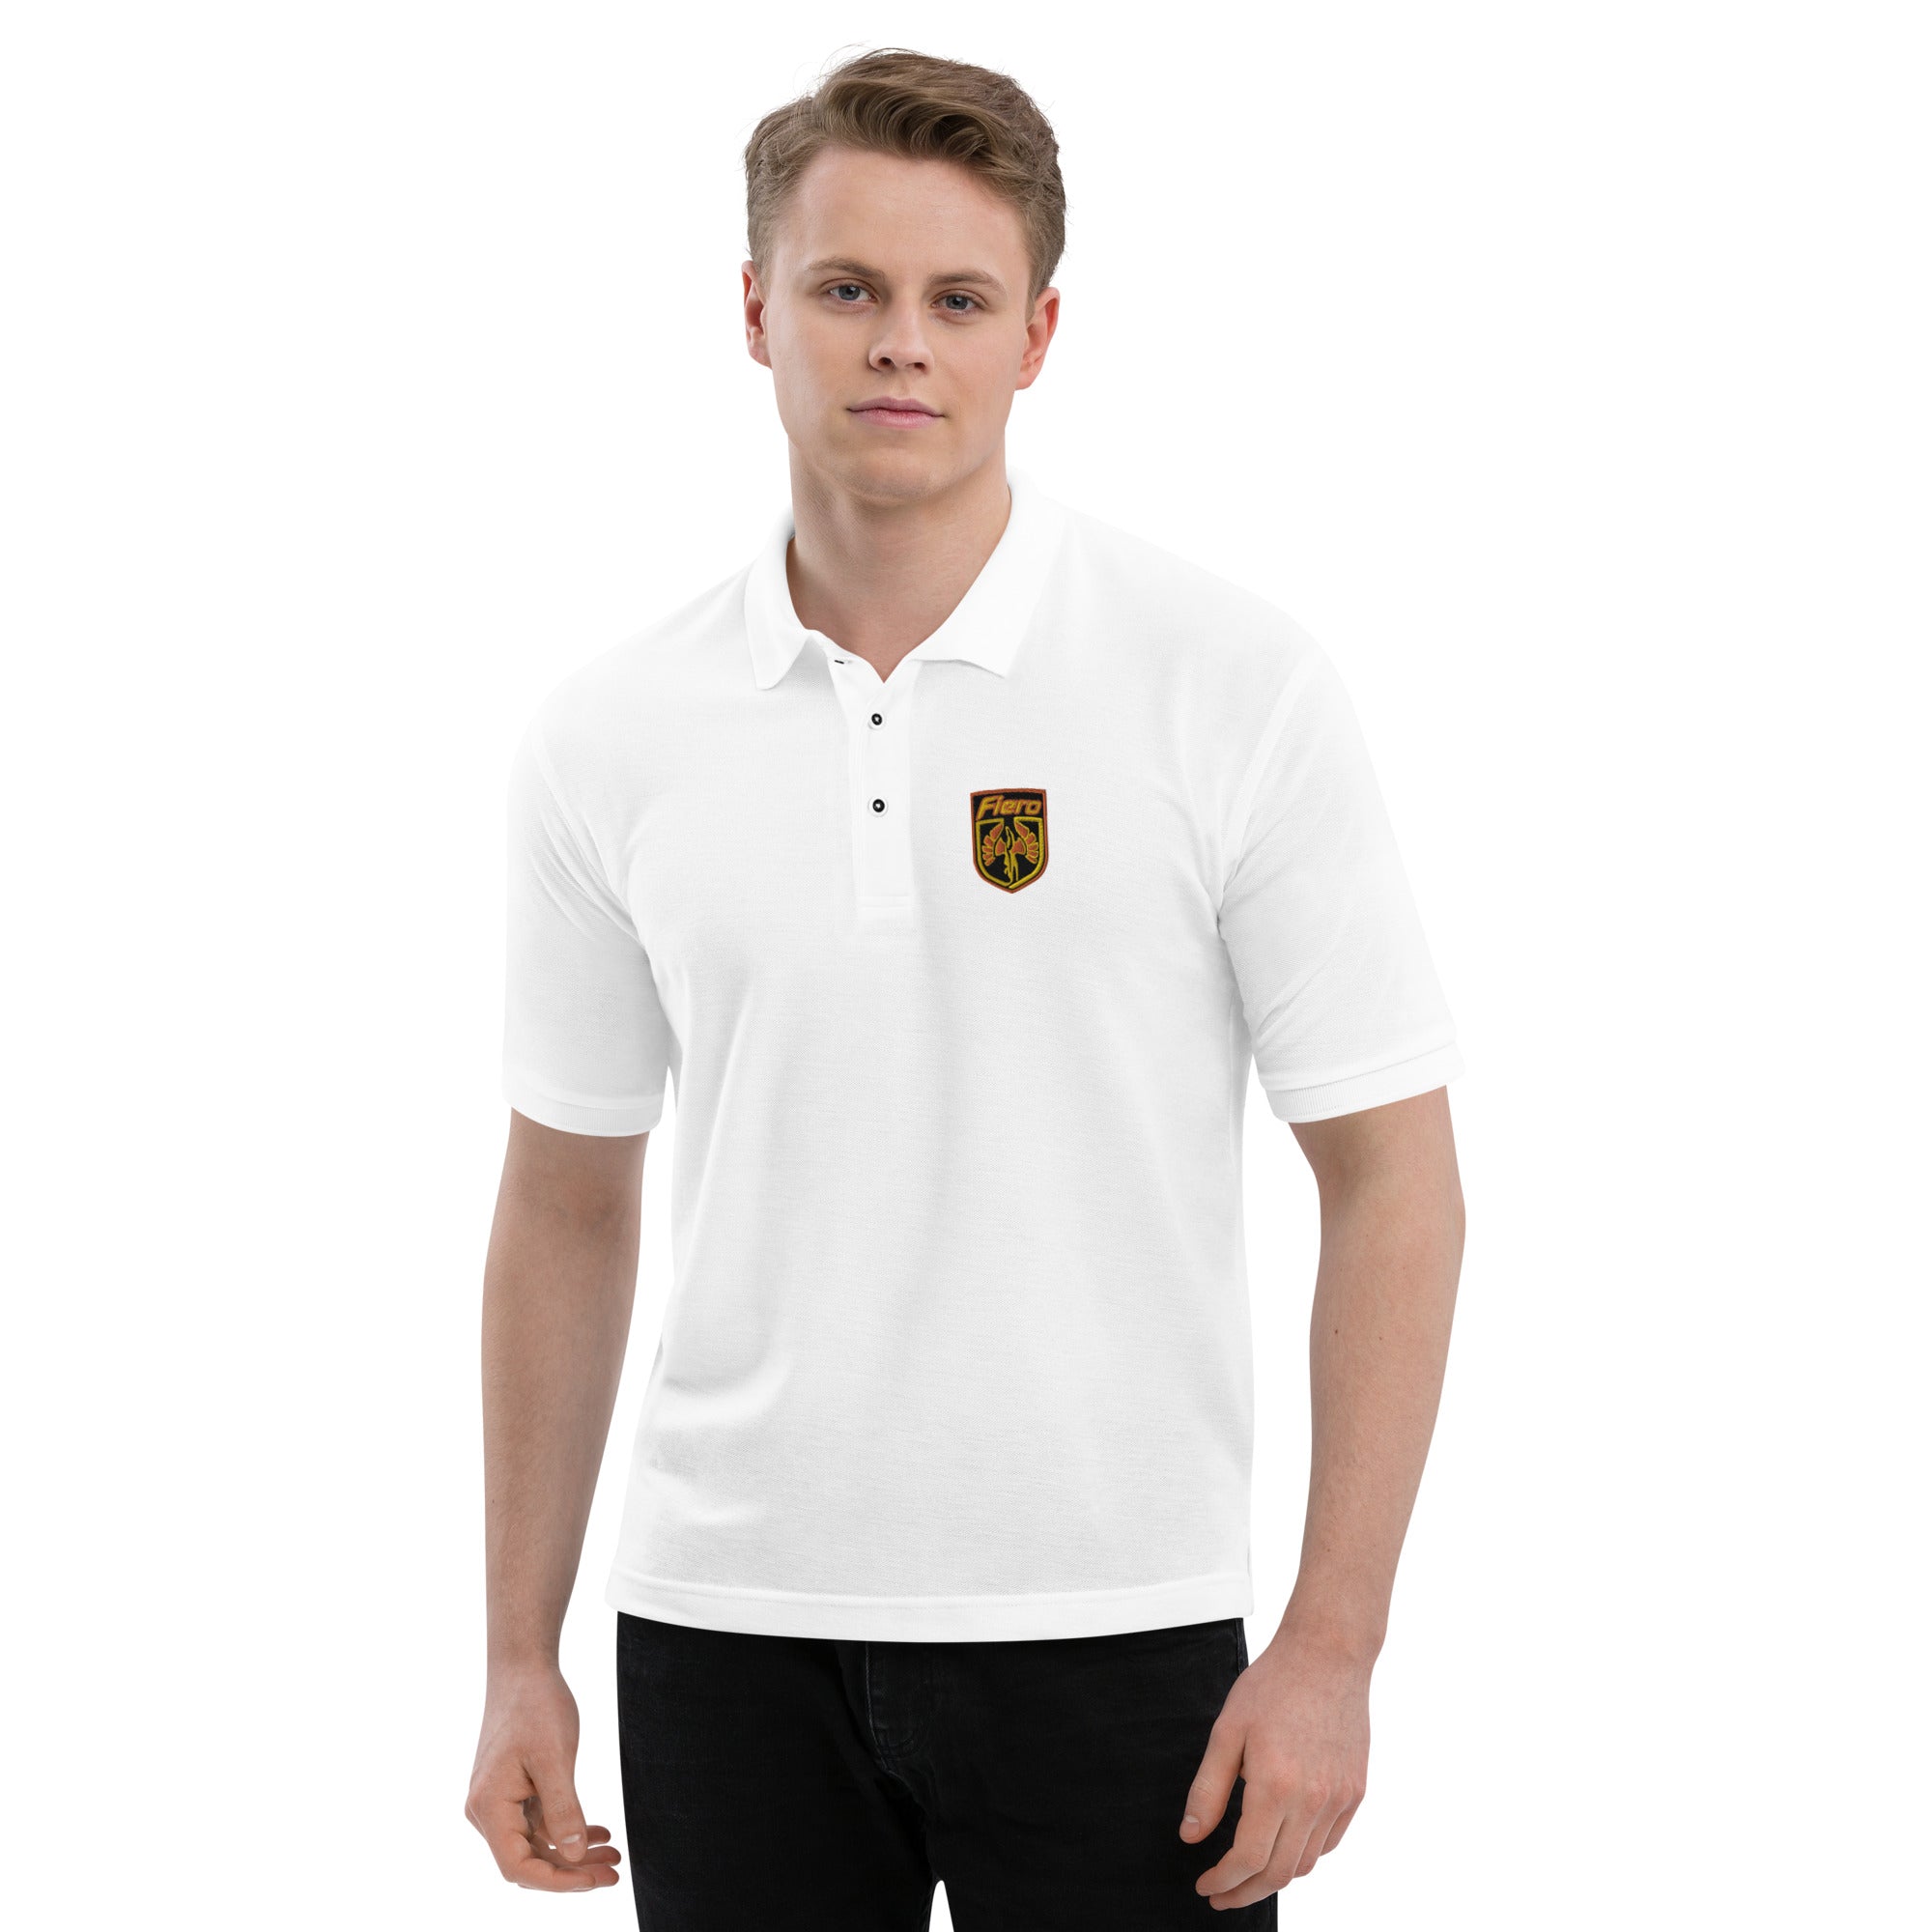 Fiero Embroidered Men's Premium Polo Shirt - Pontiac